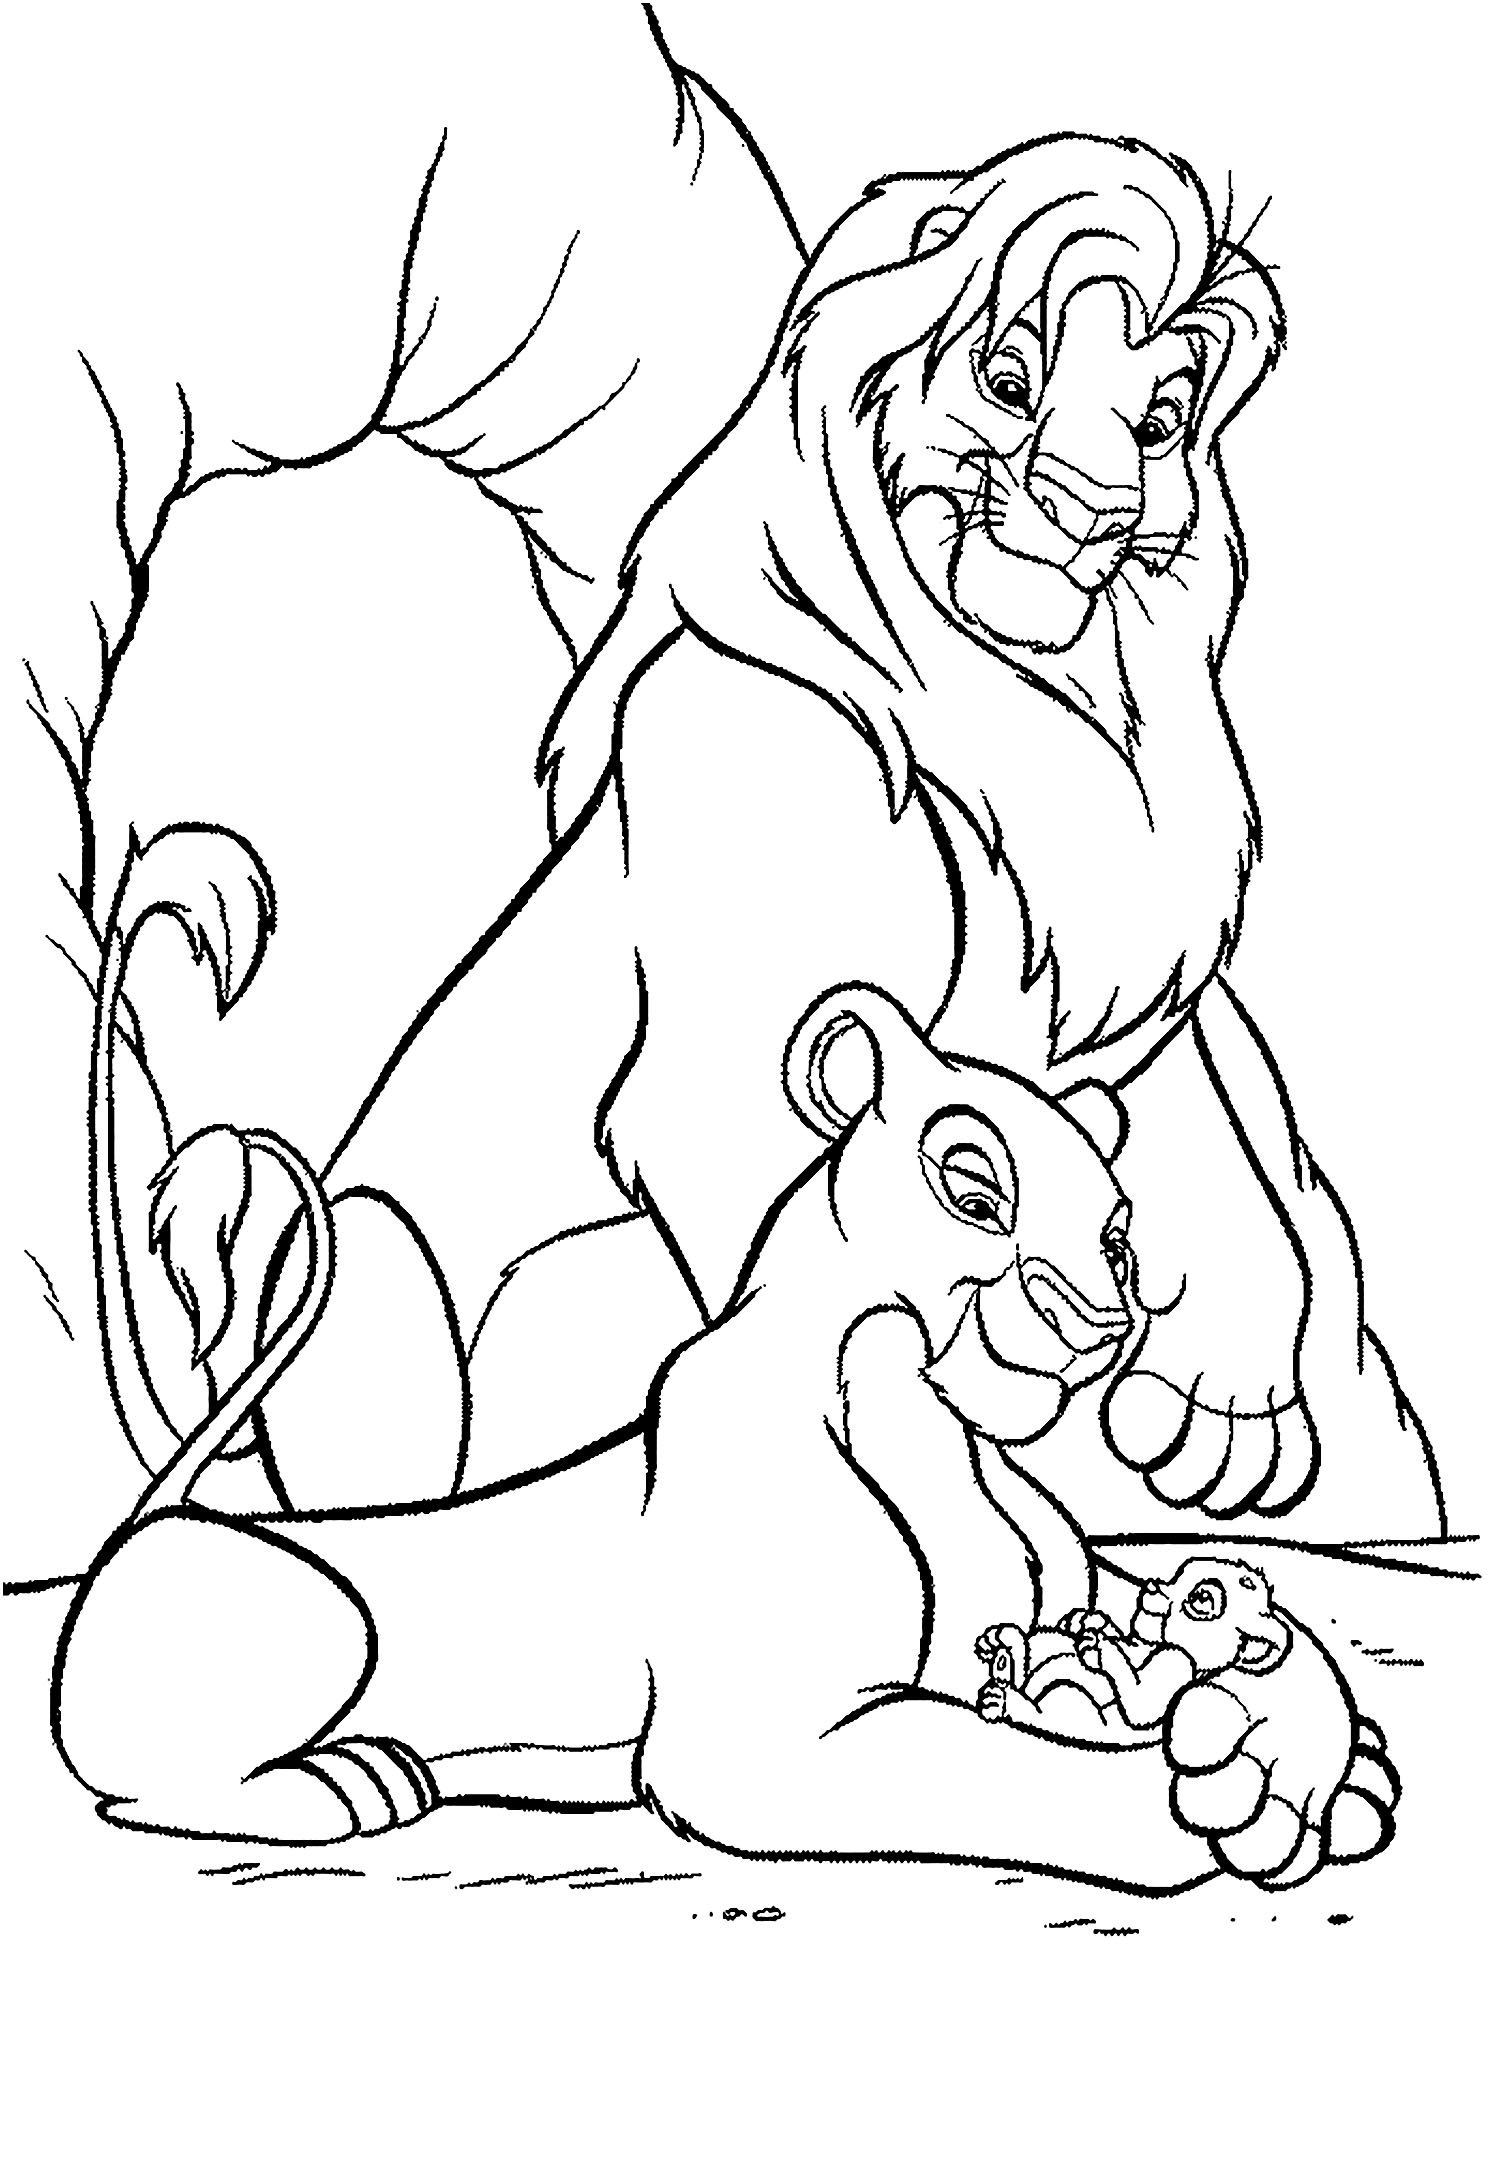 Mufasa Nala and their son Simba The Lion King Kids